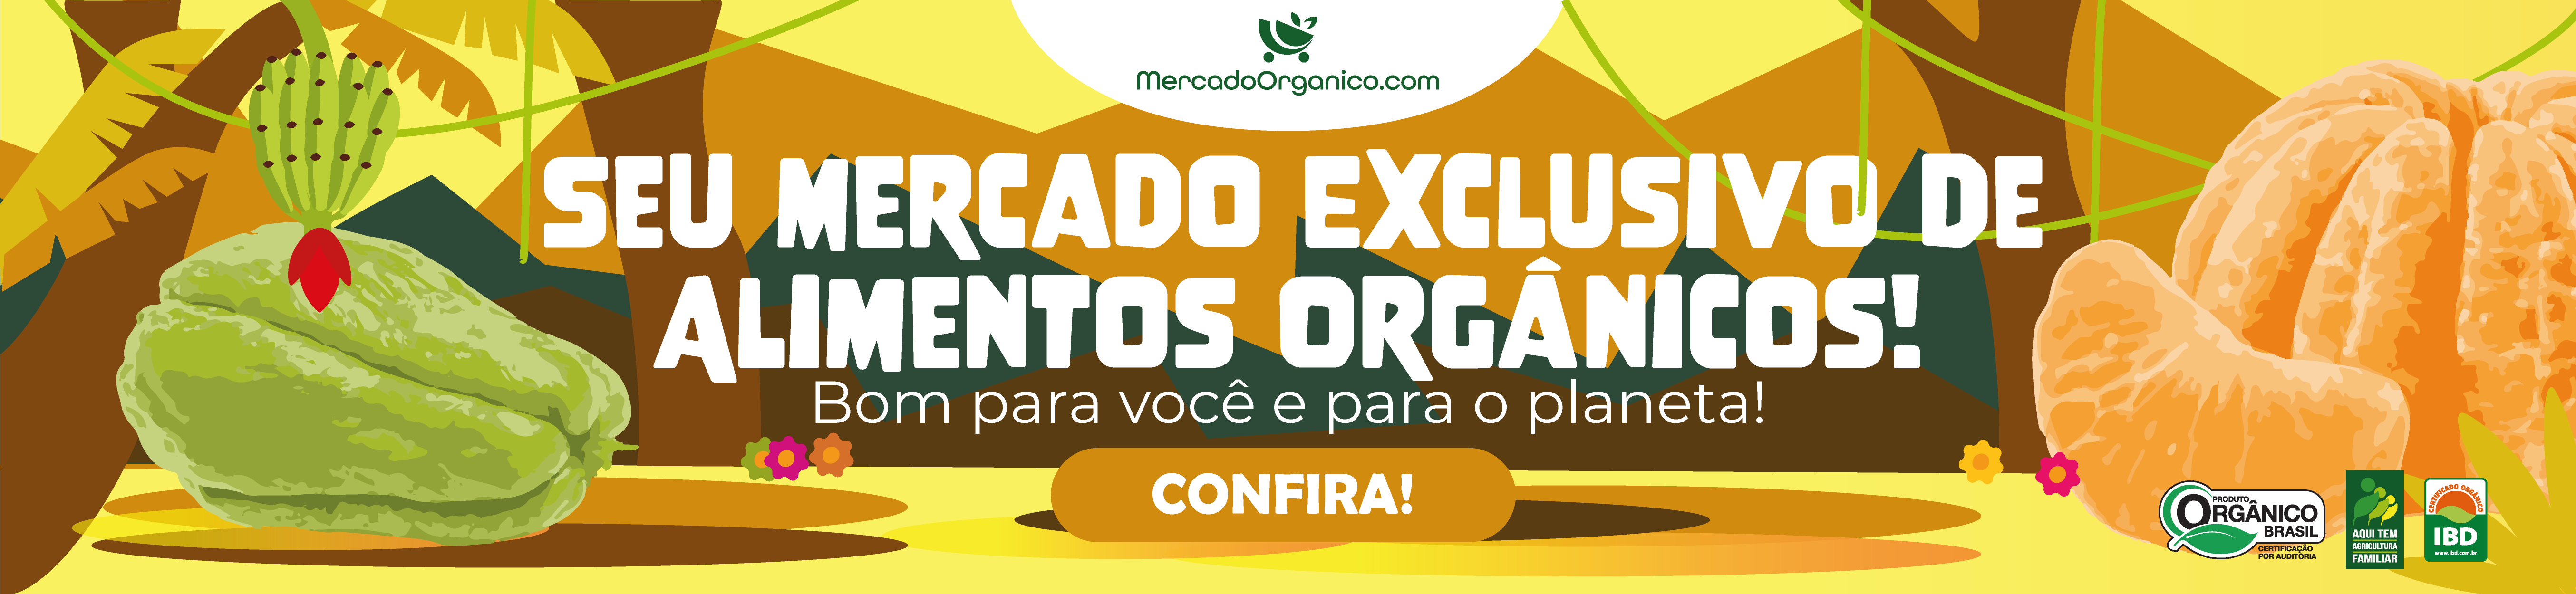 MercadoOrganico.com